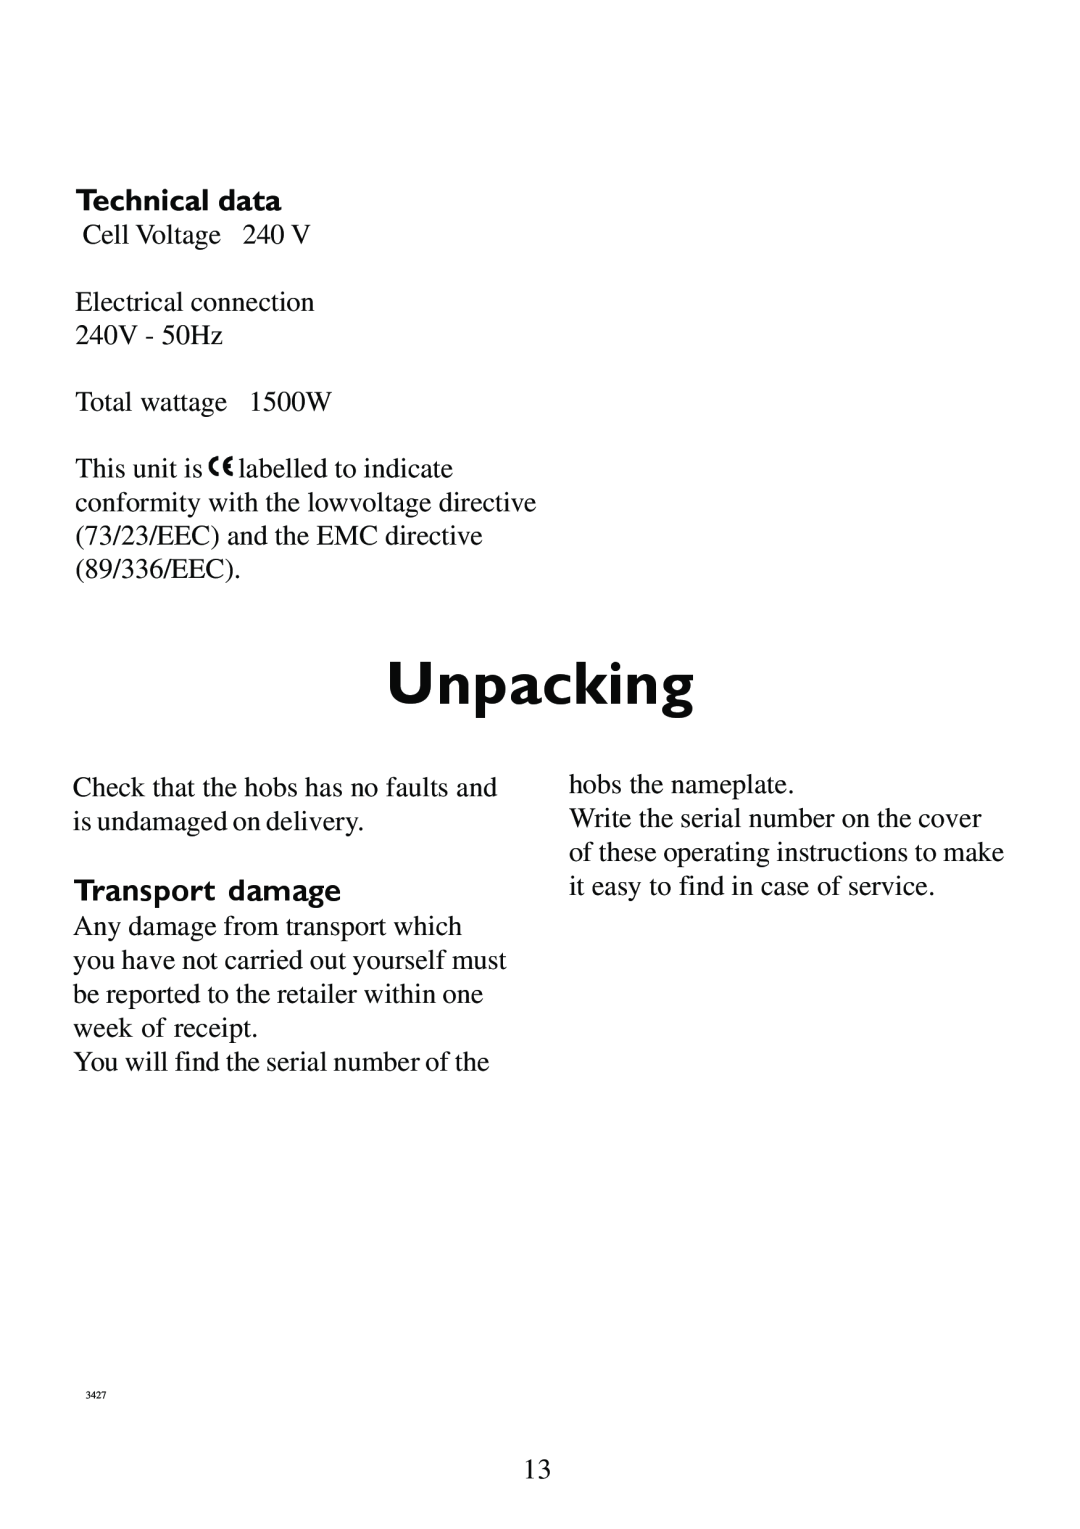 AEG 231GR-M manual Unpacking, Transport damage 